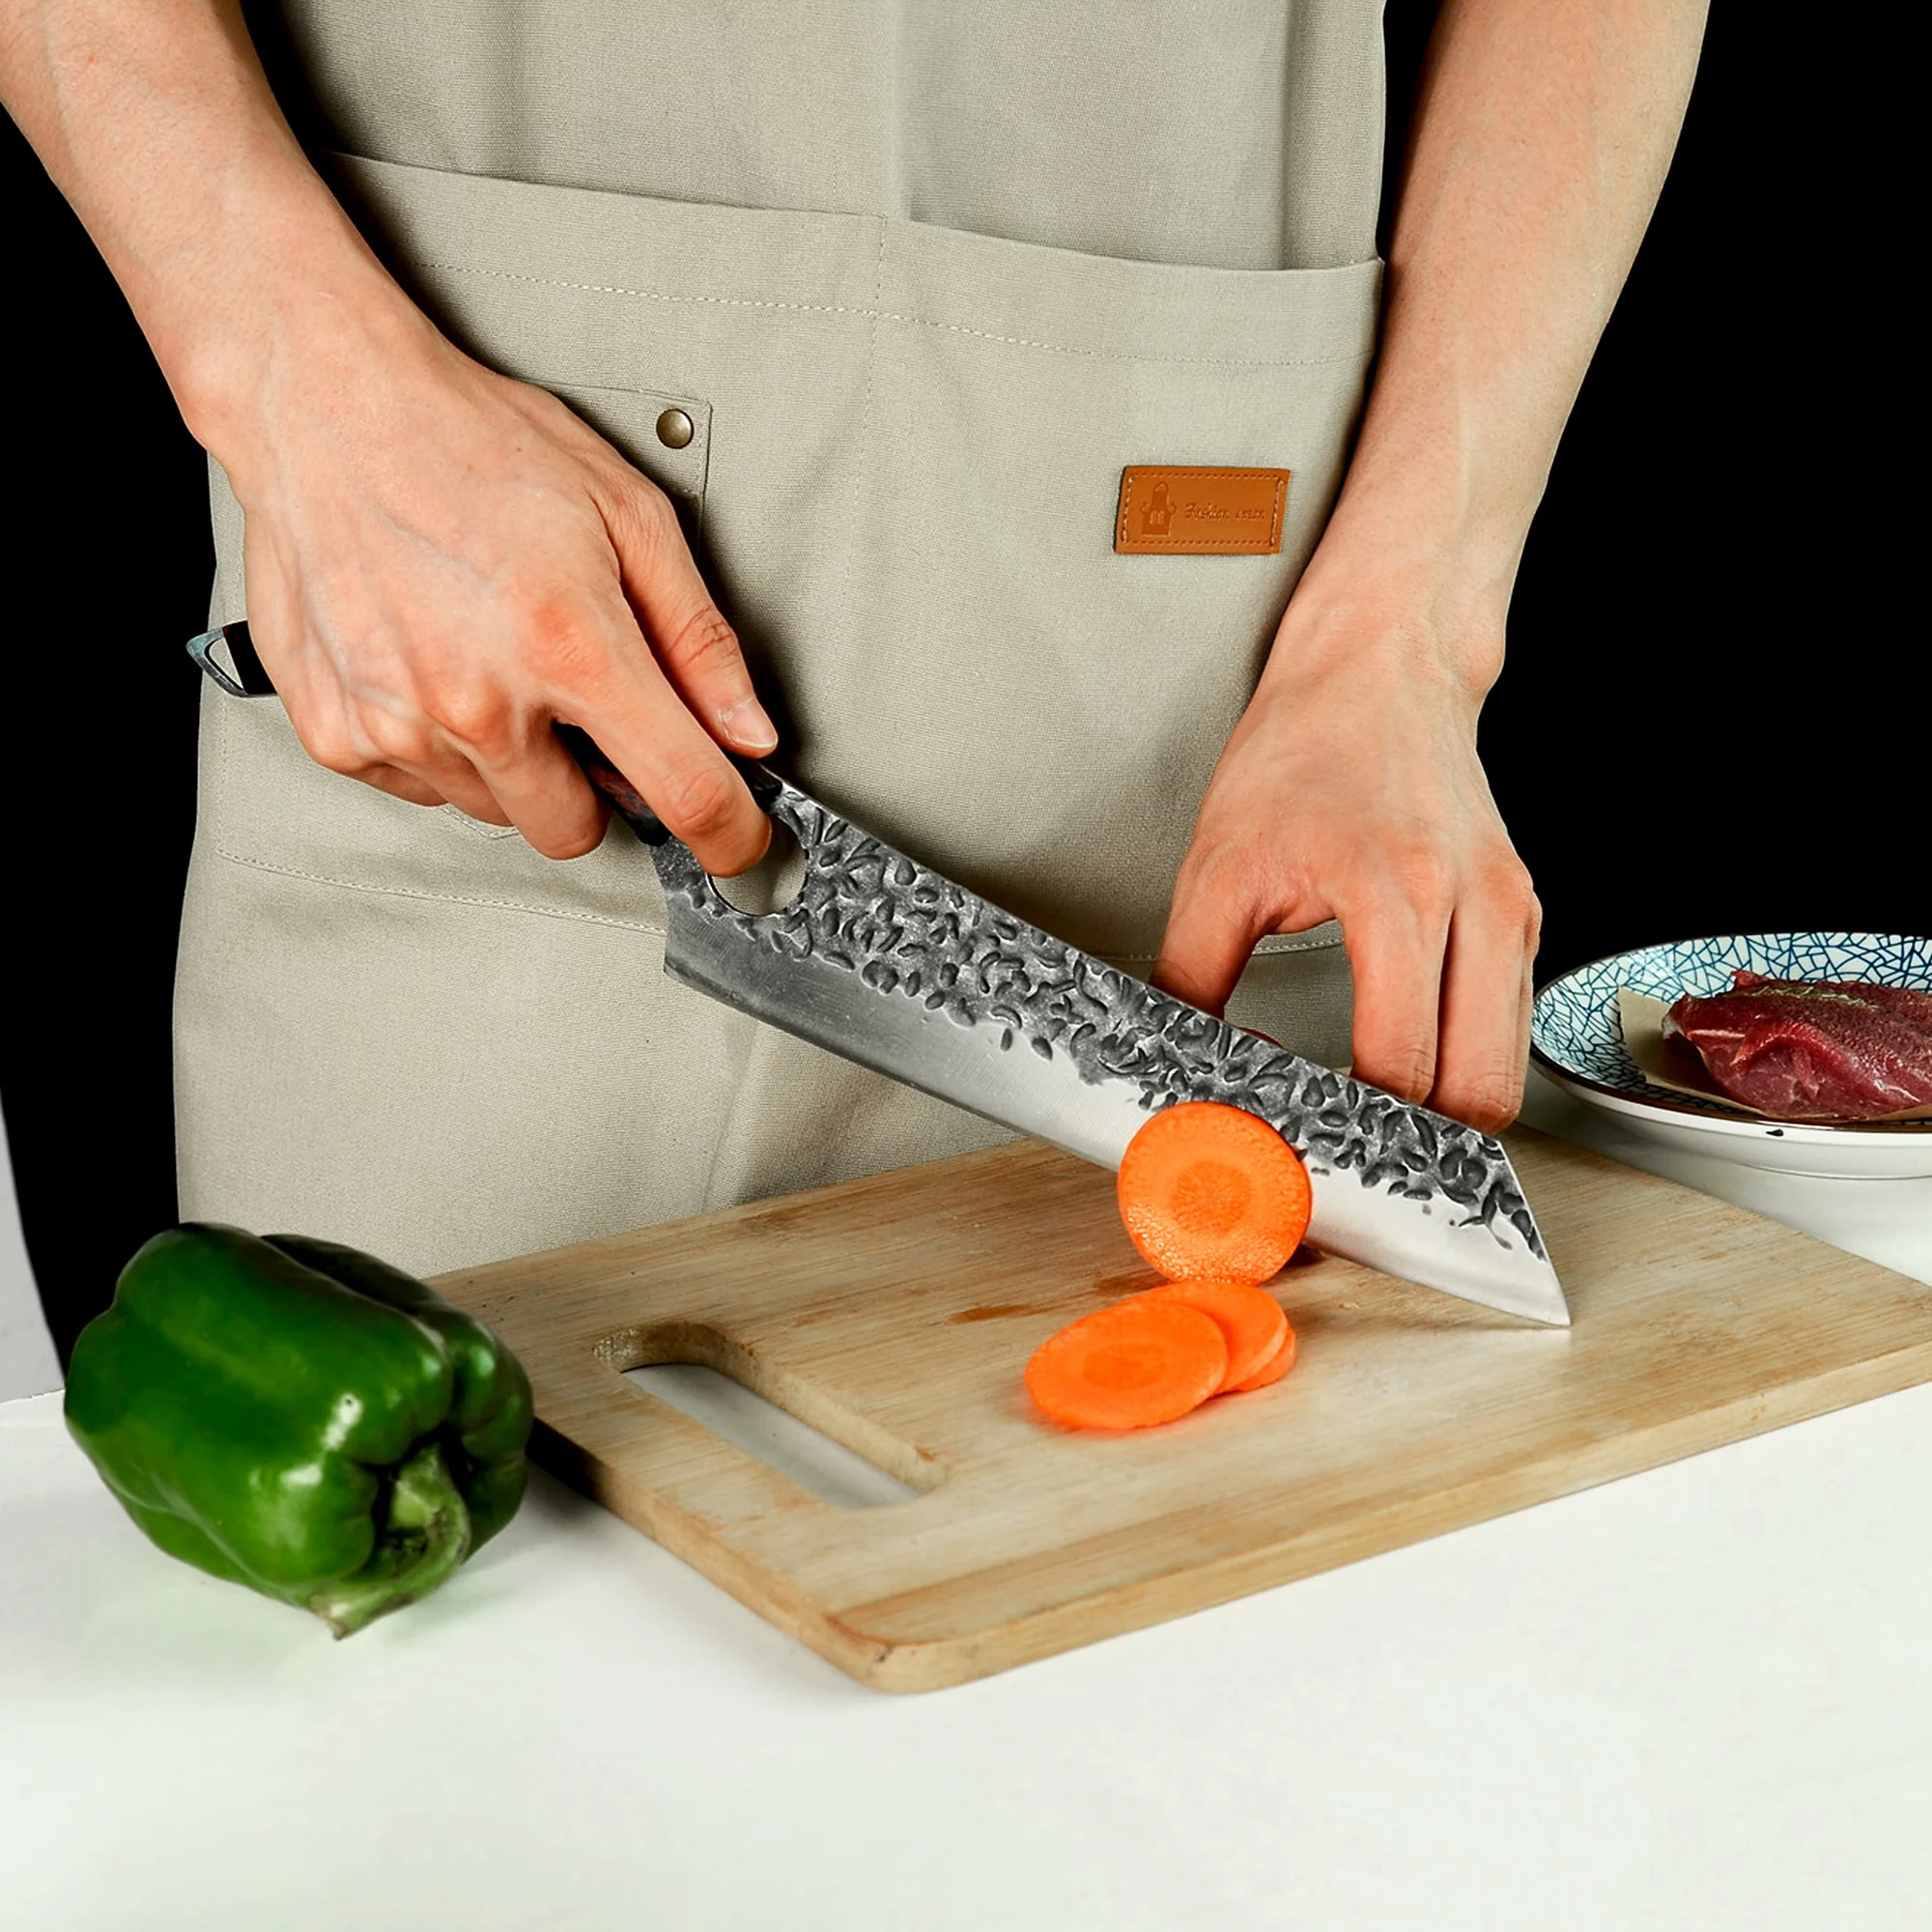 

XYj японский кухонный нож 8,5 дюйма, кухонные ножи из нержавеющей стали для шеф-повара, нож для ловли рыбы и косточек с деревянной ручкой